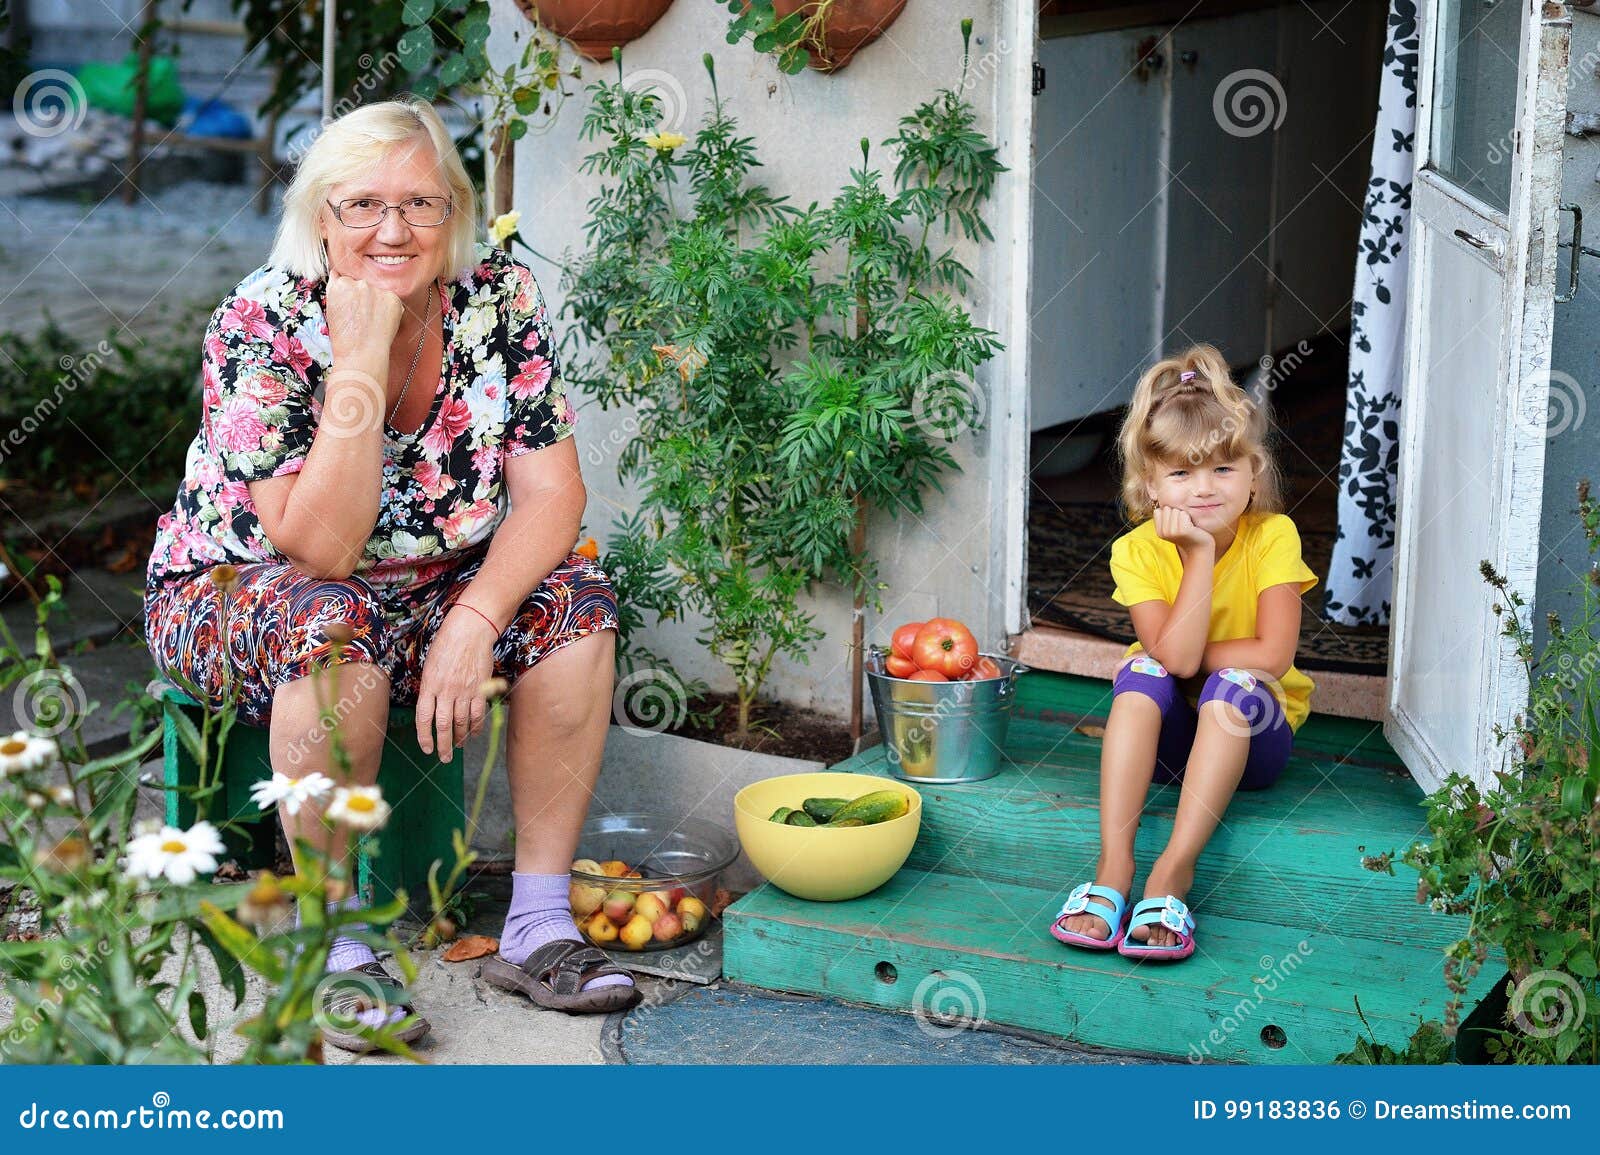 эротика бабушек и малолеток фото 118